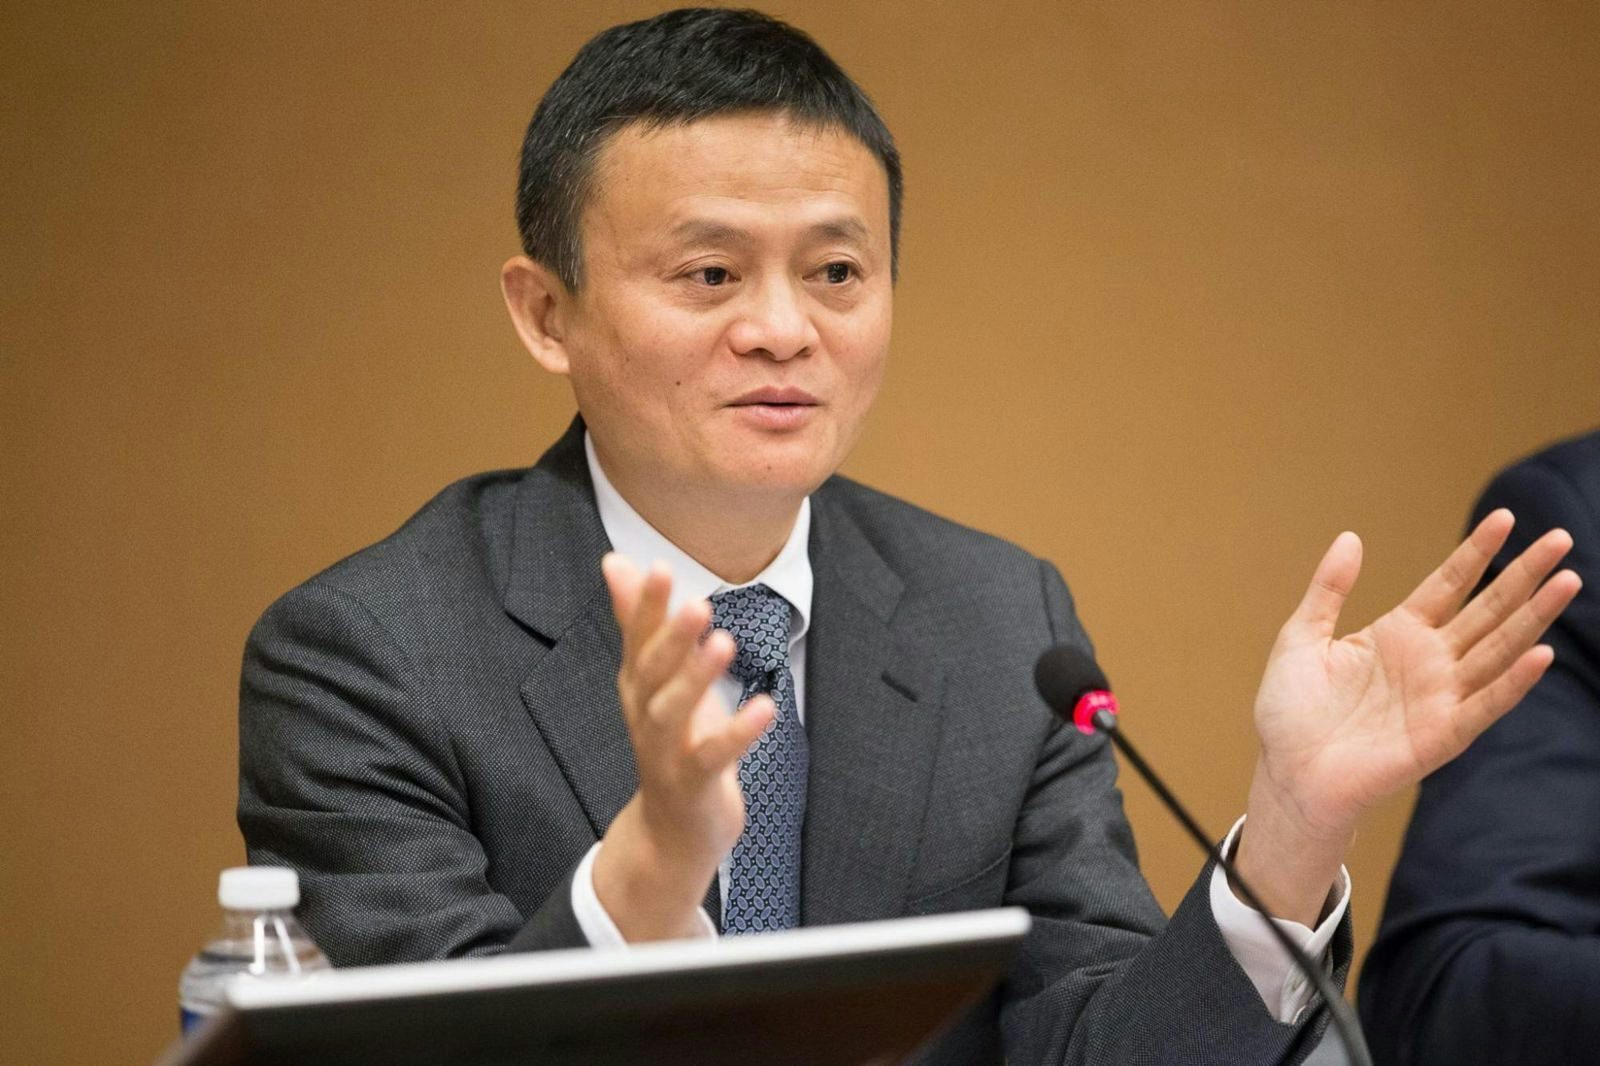 Jack Ma Unseats Wang Jianlin as China's Wealthiest Man